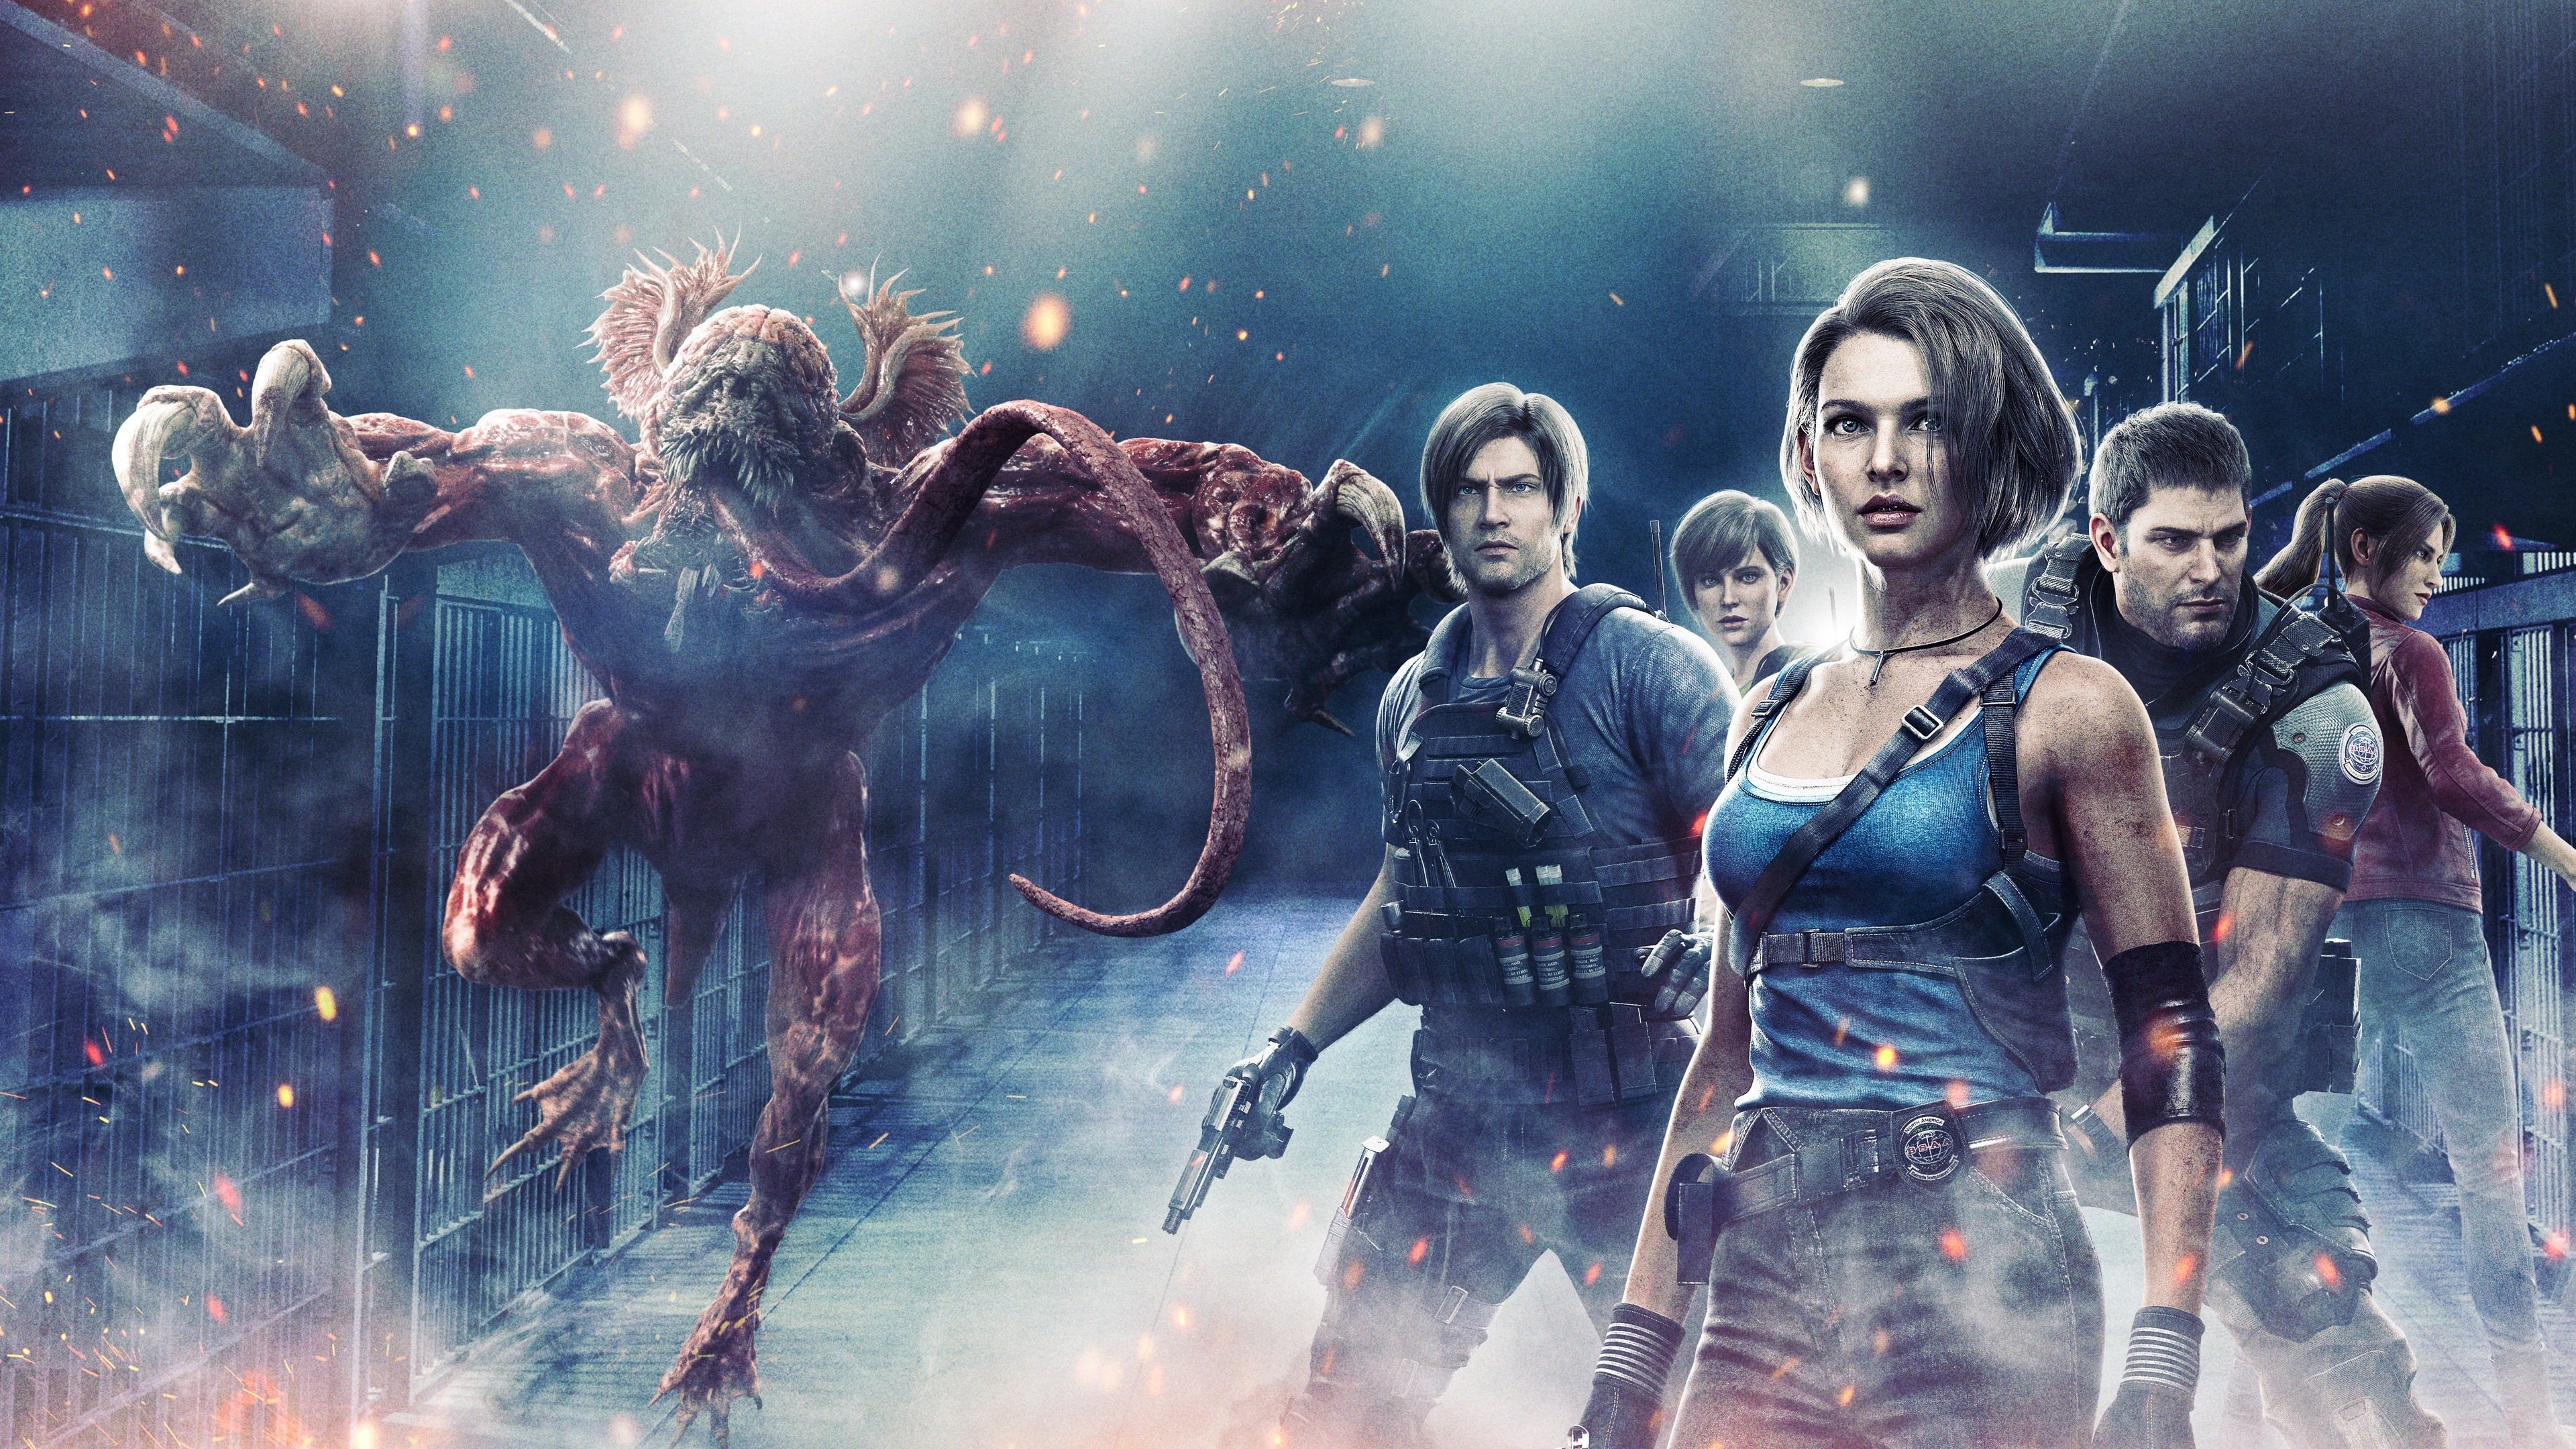 Resident Evil - L'isola della morte